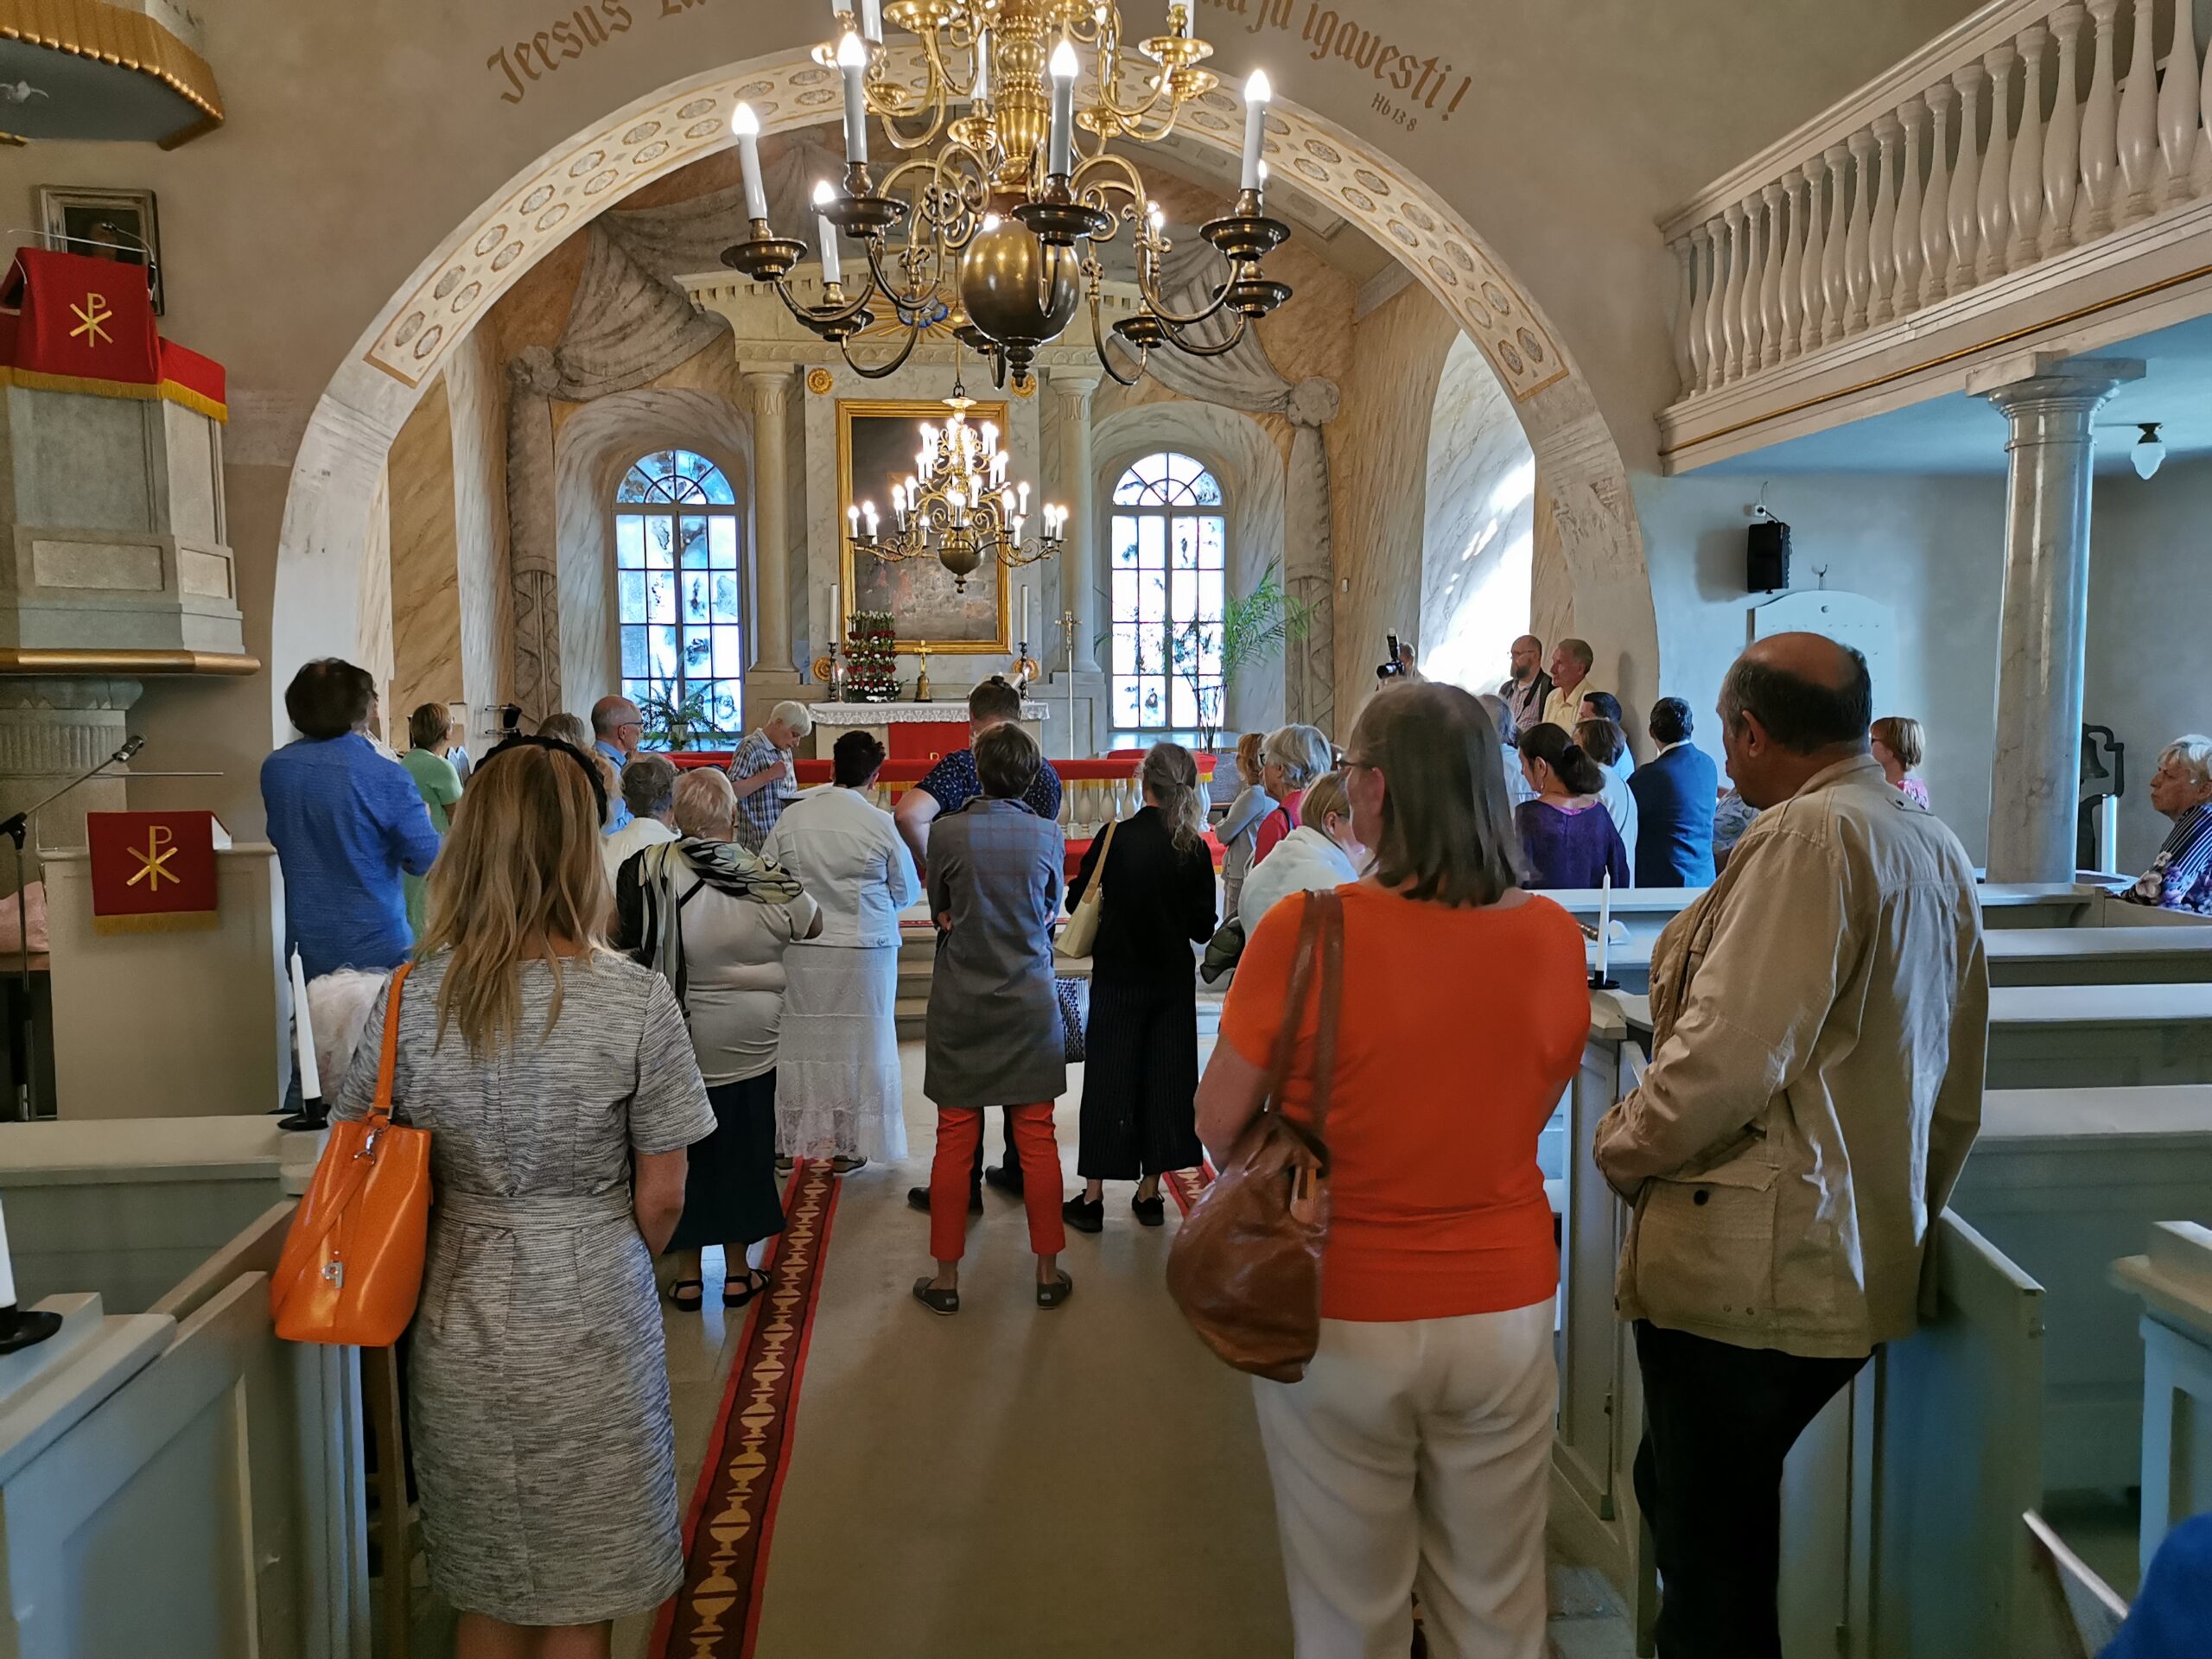 Väärikas 500: Pereraadio jagab juubelimõtteid Kuressaare koguduse ümmarguse tähtpäeva puhul